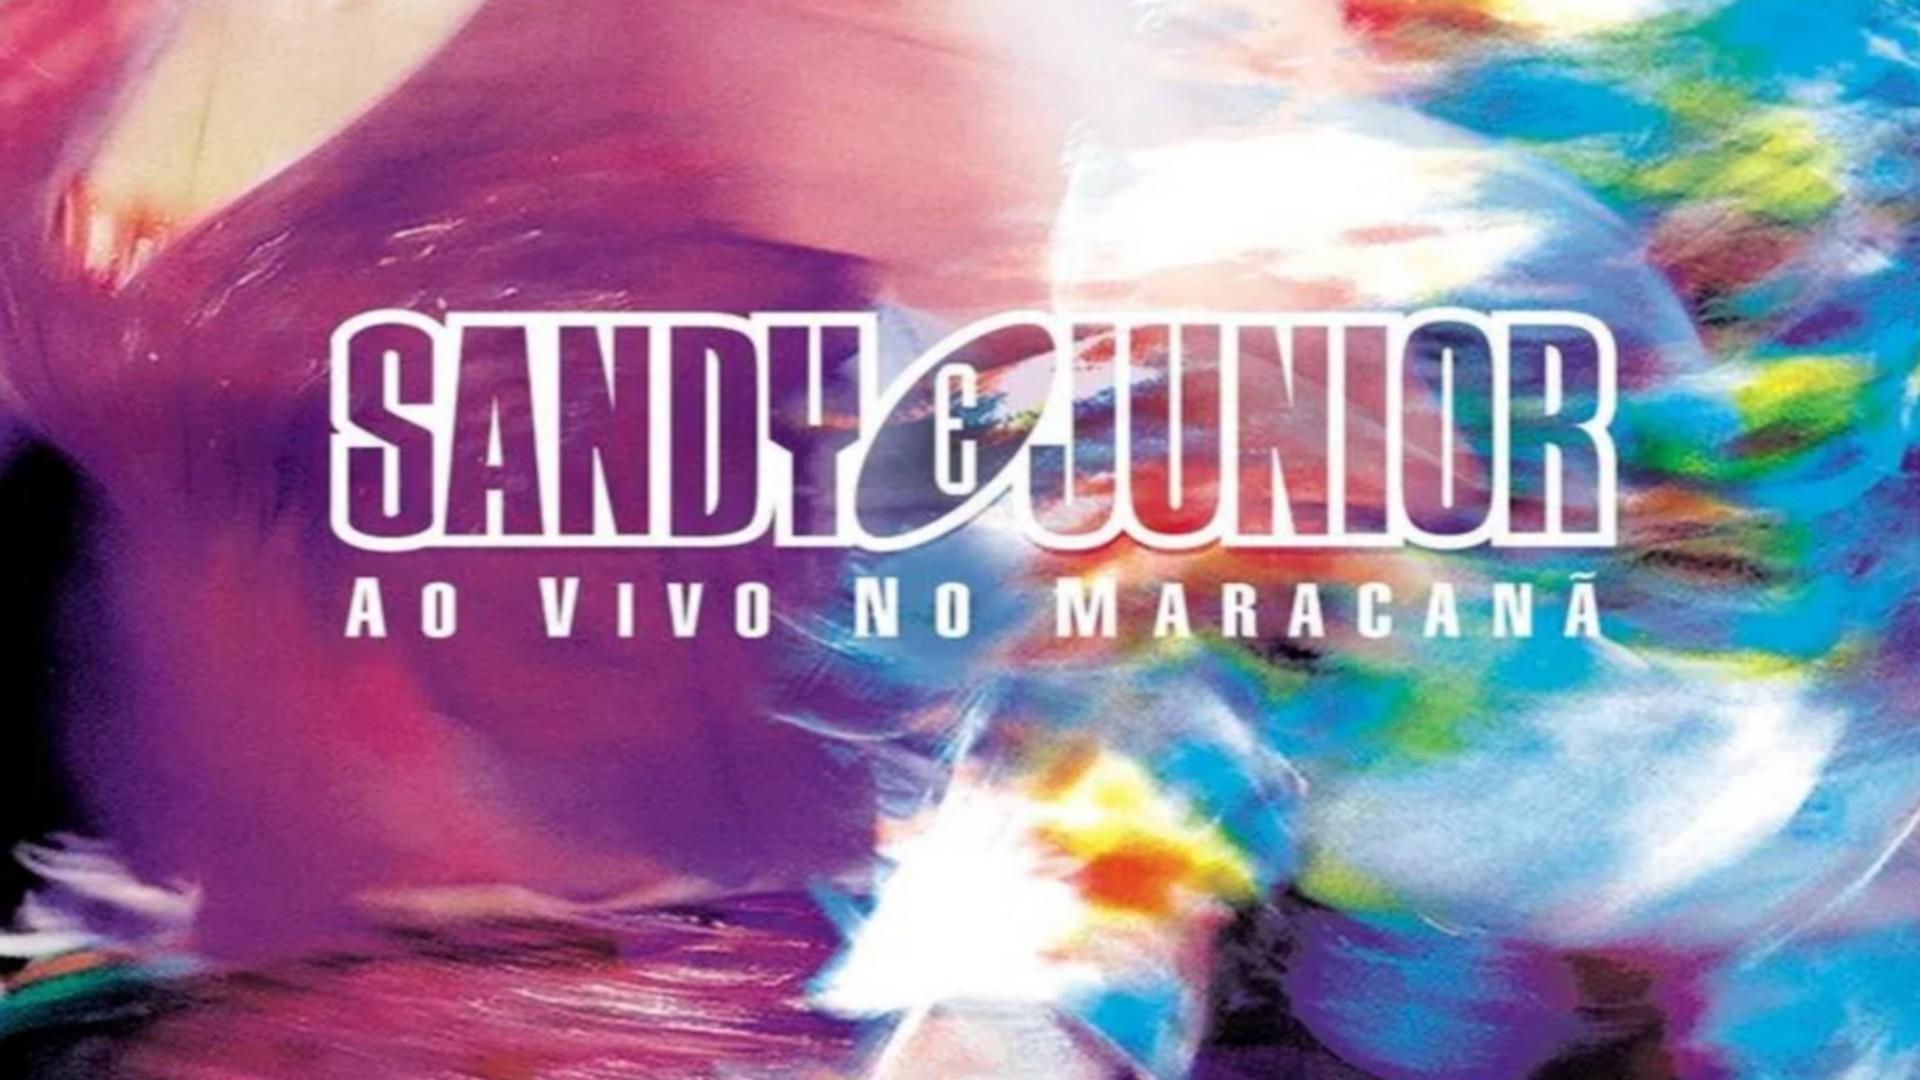 Sandy & Junior - Ao Vivo no Maracanã